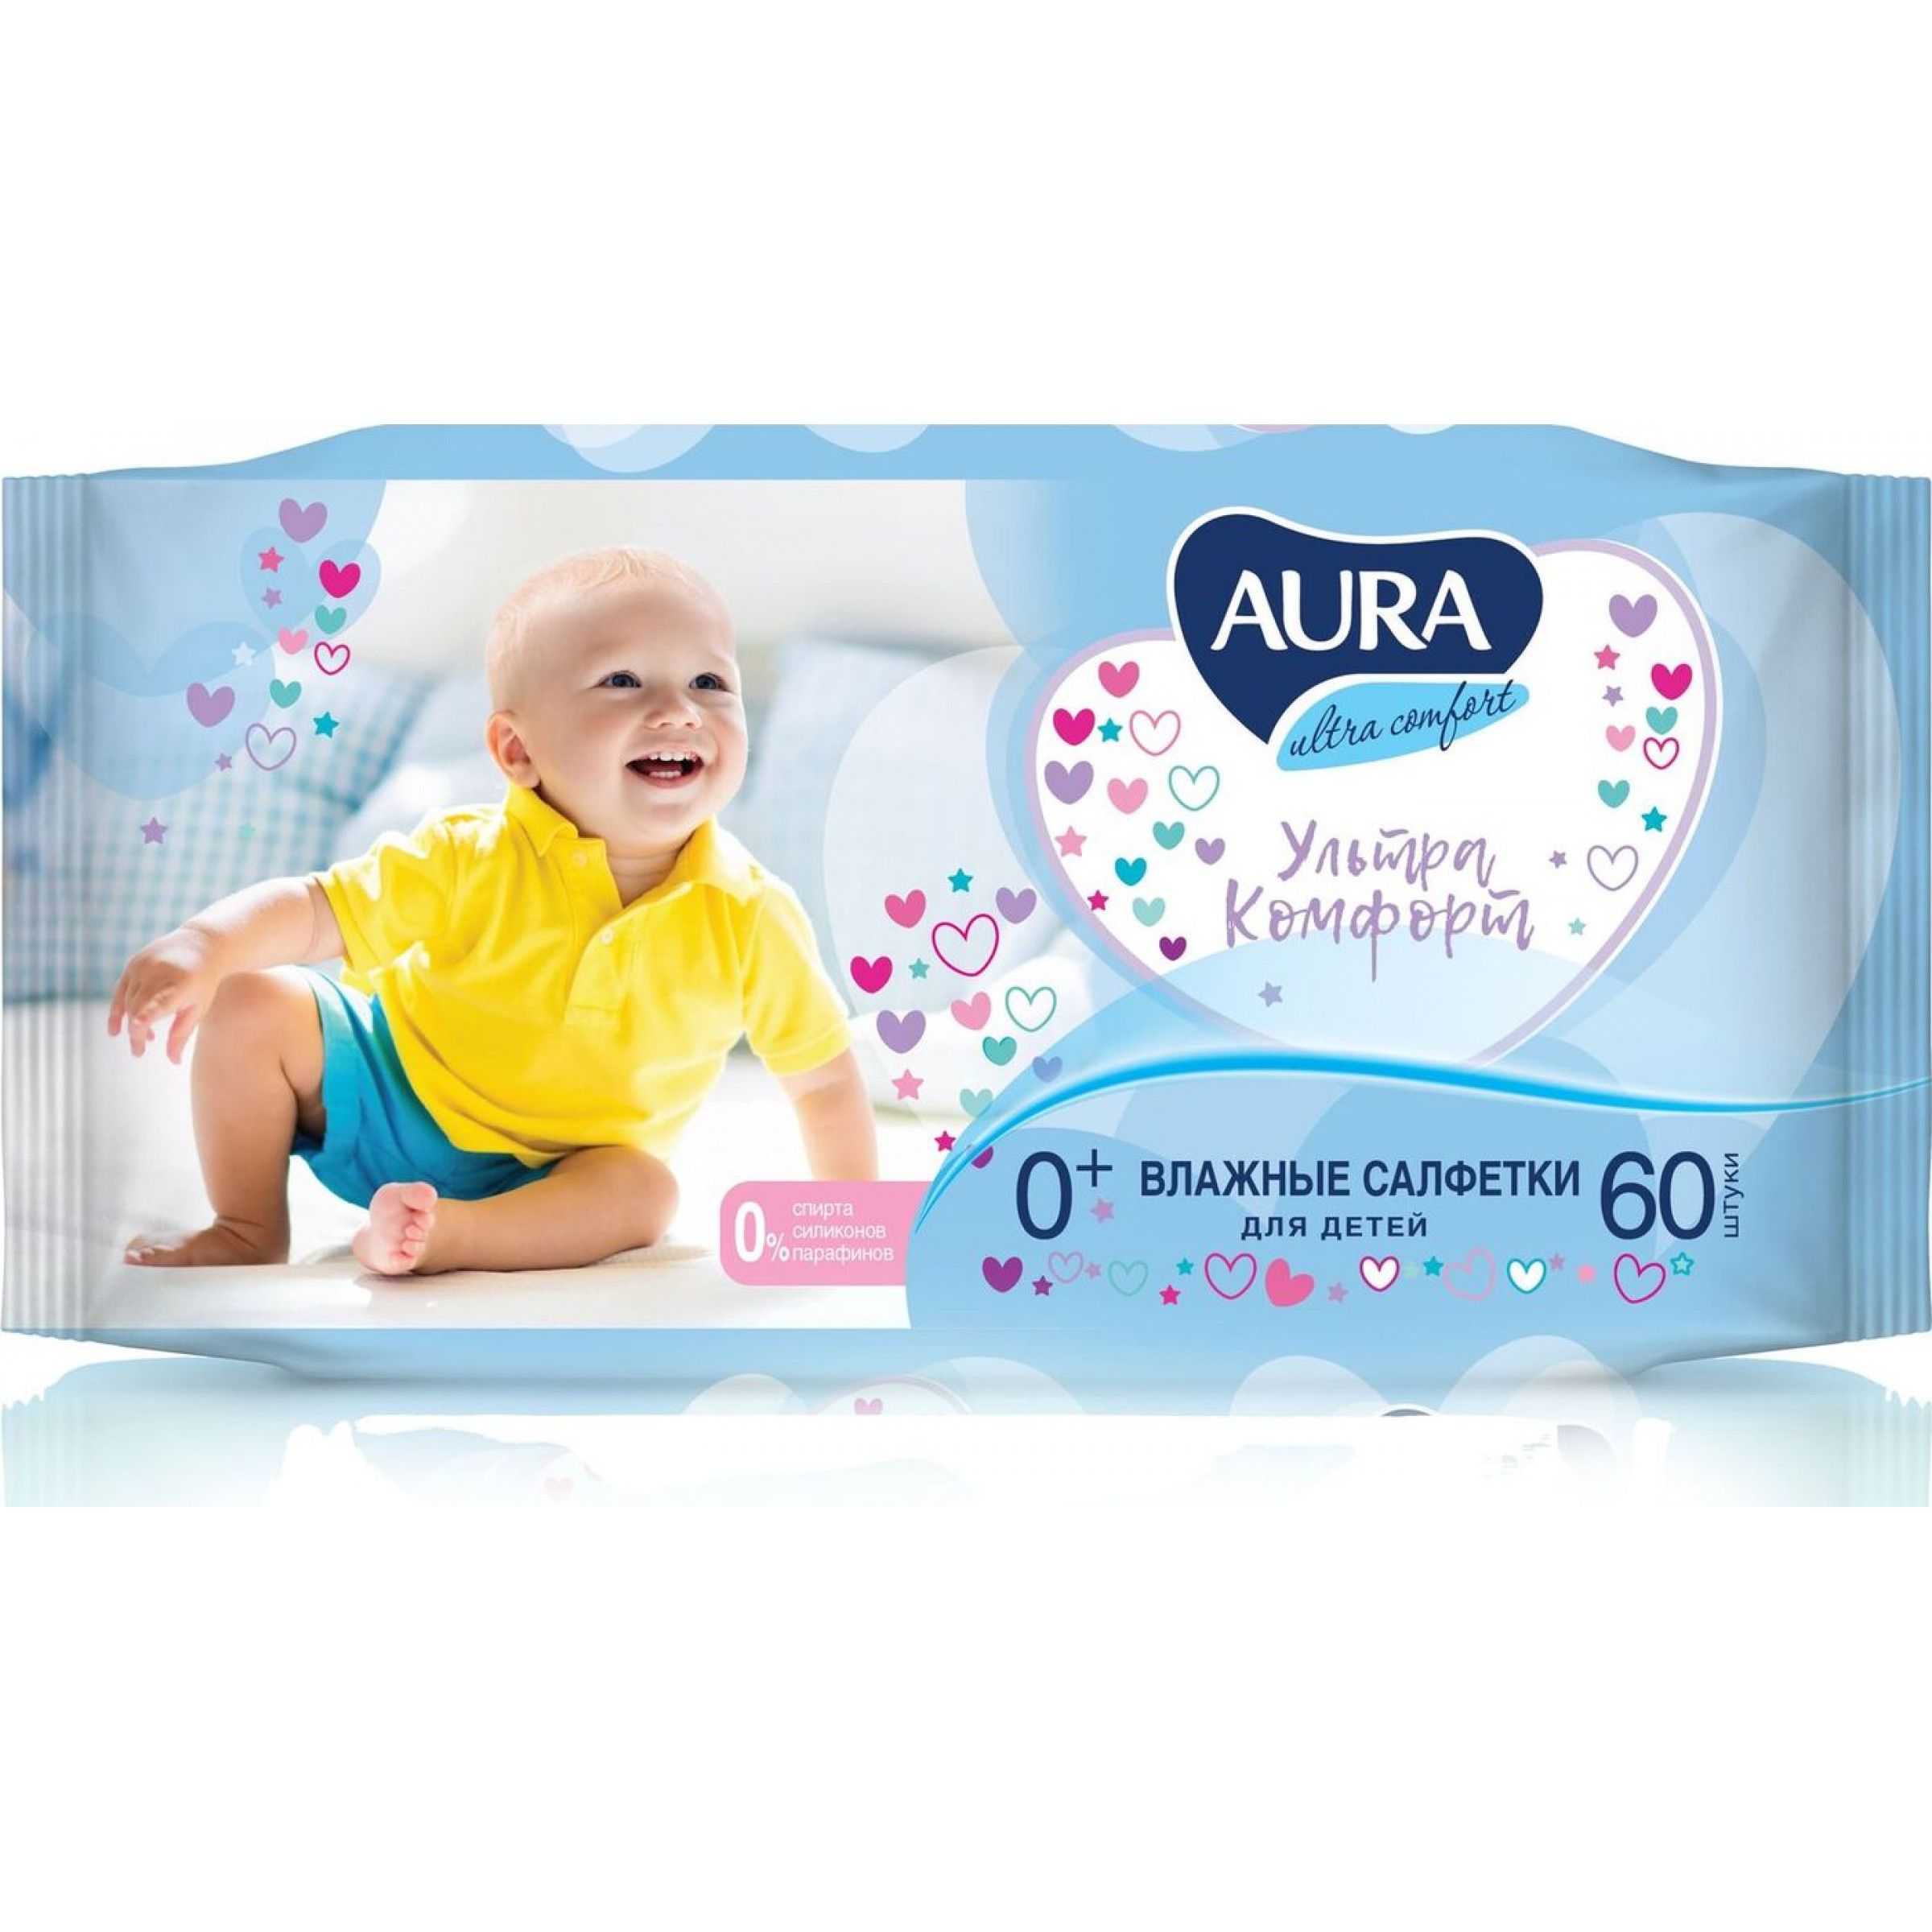 Влажные салфетки для детей Aura Ultra Comfort, 60 шт